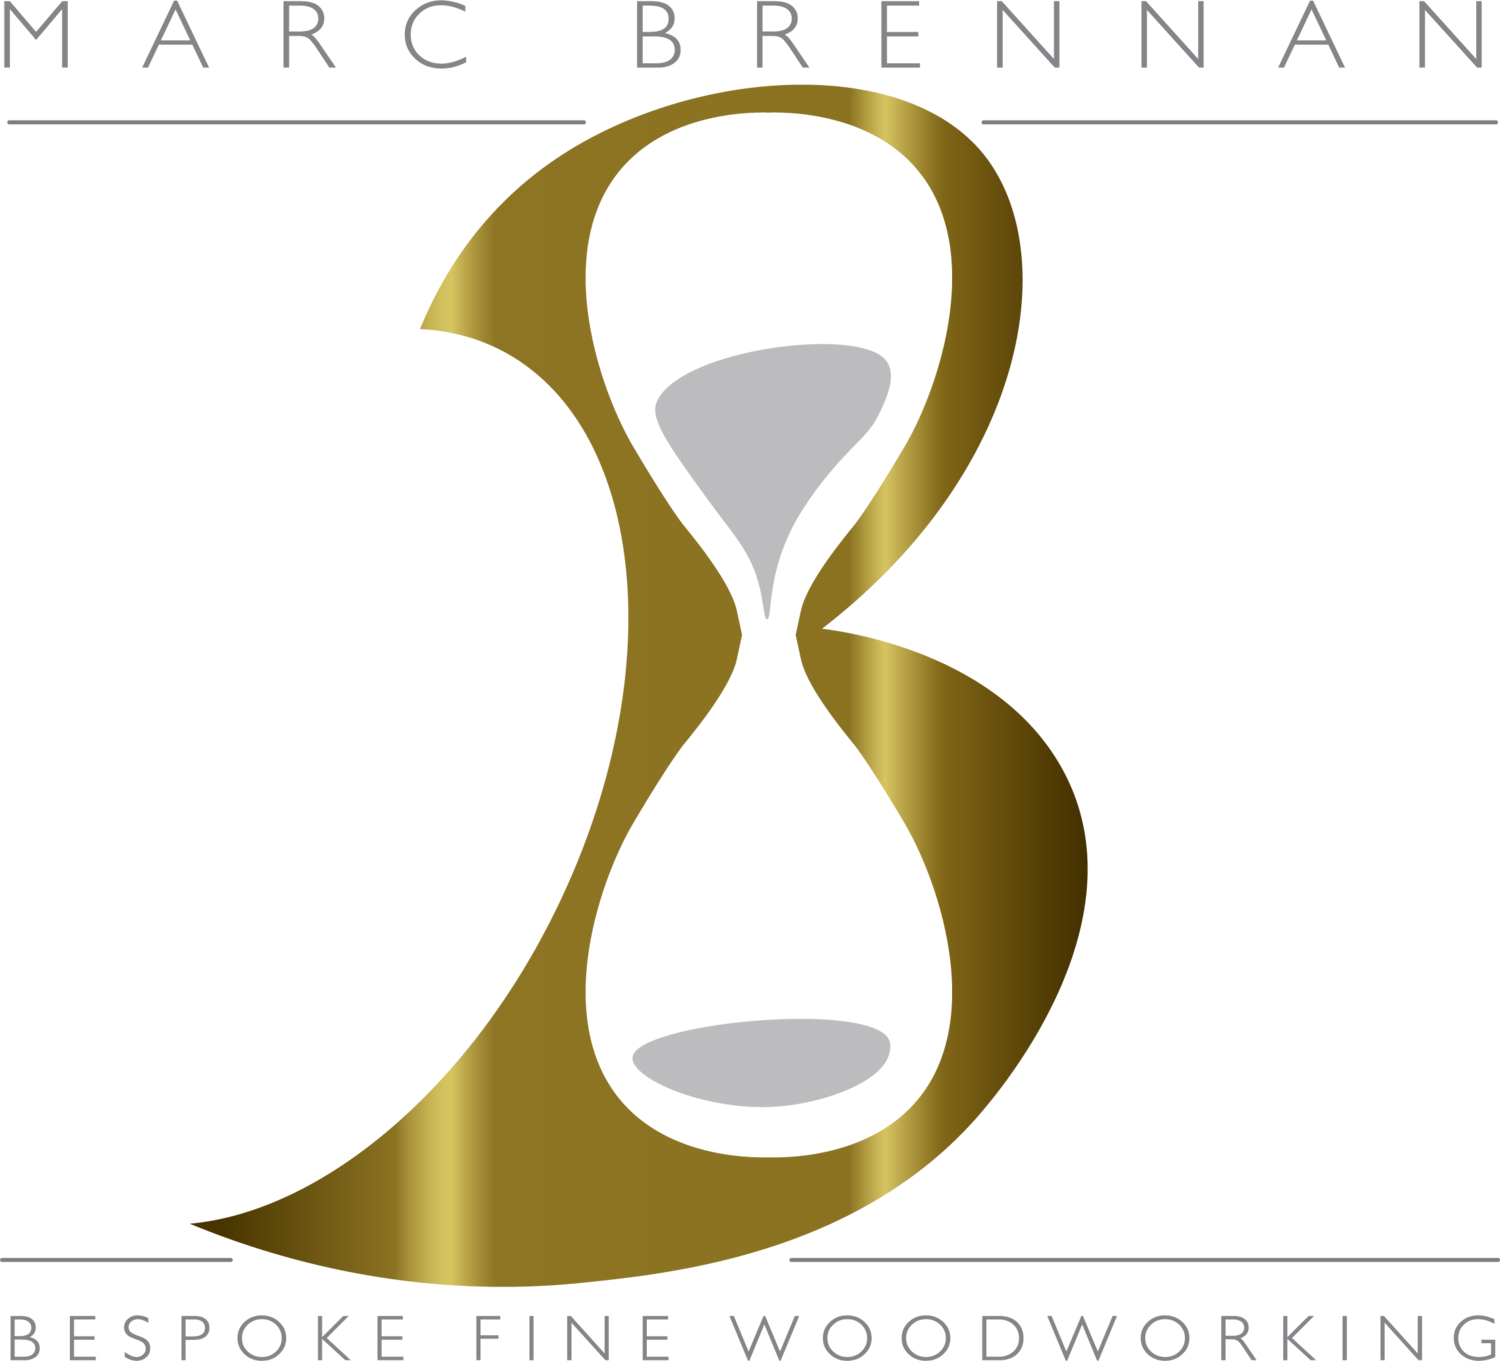 Marc Brennan Bespoke Fine Woodworking